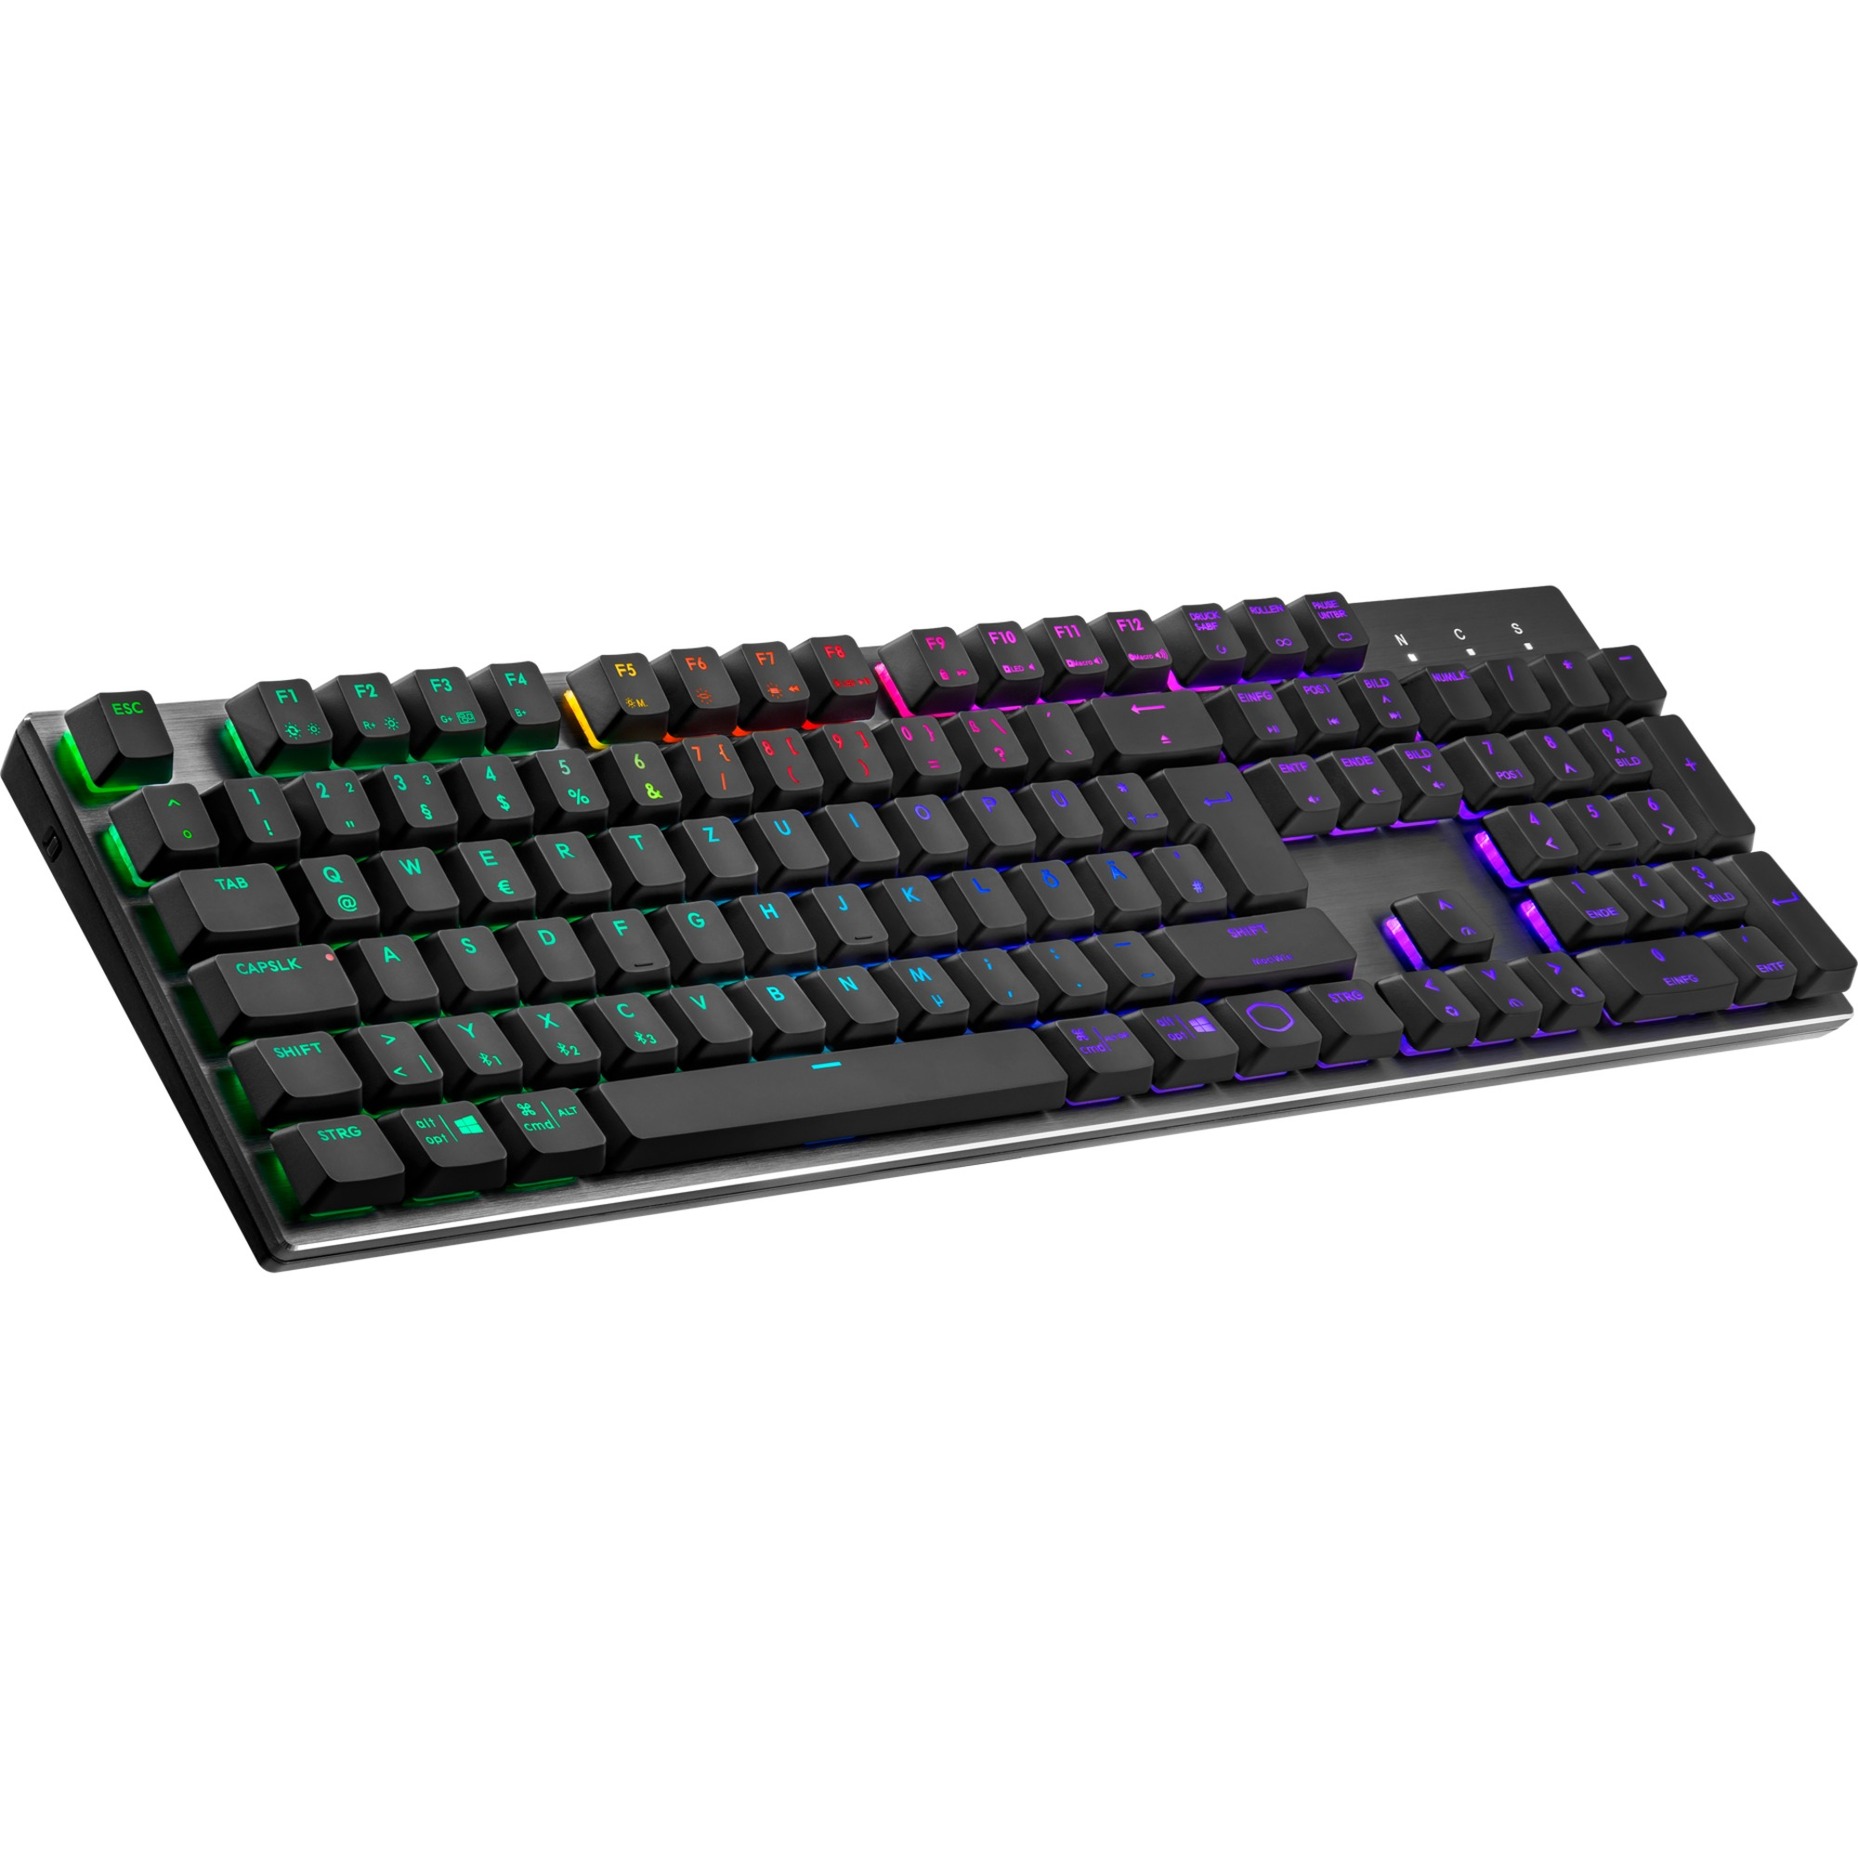 Image of Alternate - SK653 , Gaming-Tastatur online einkaufen bei Alternate